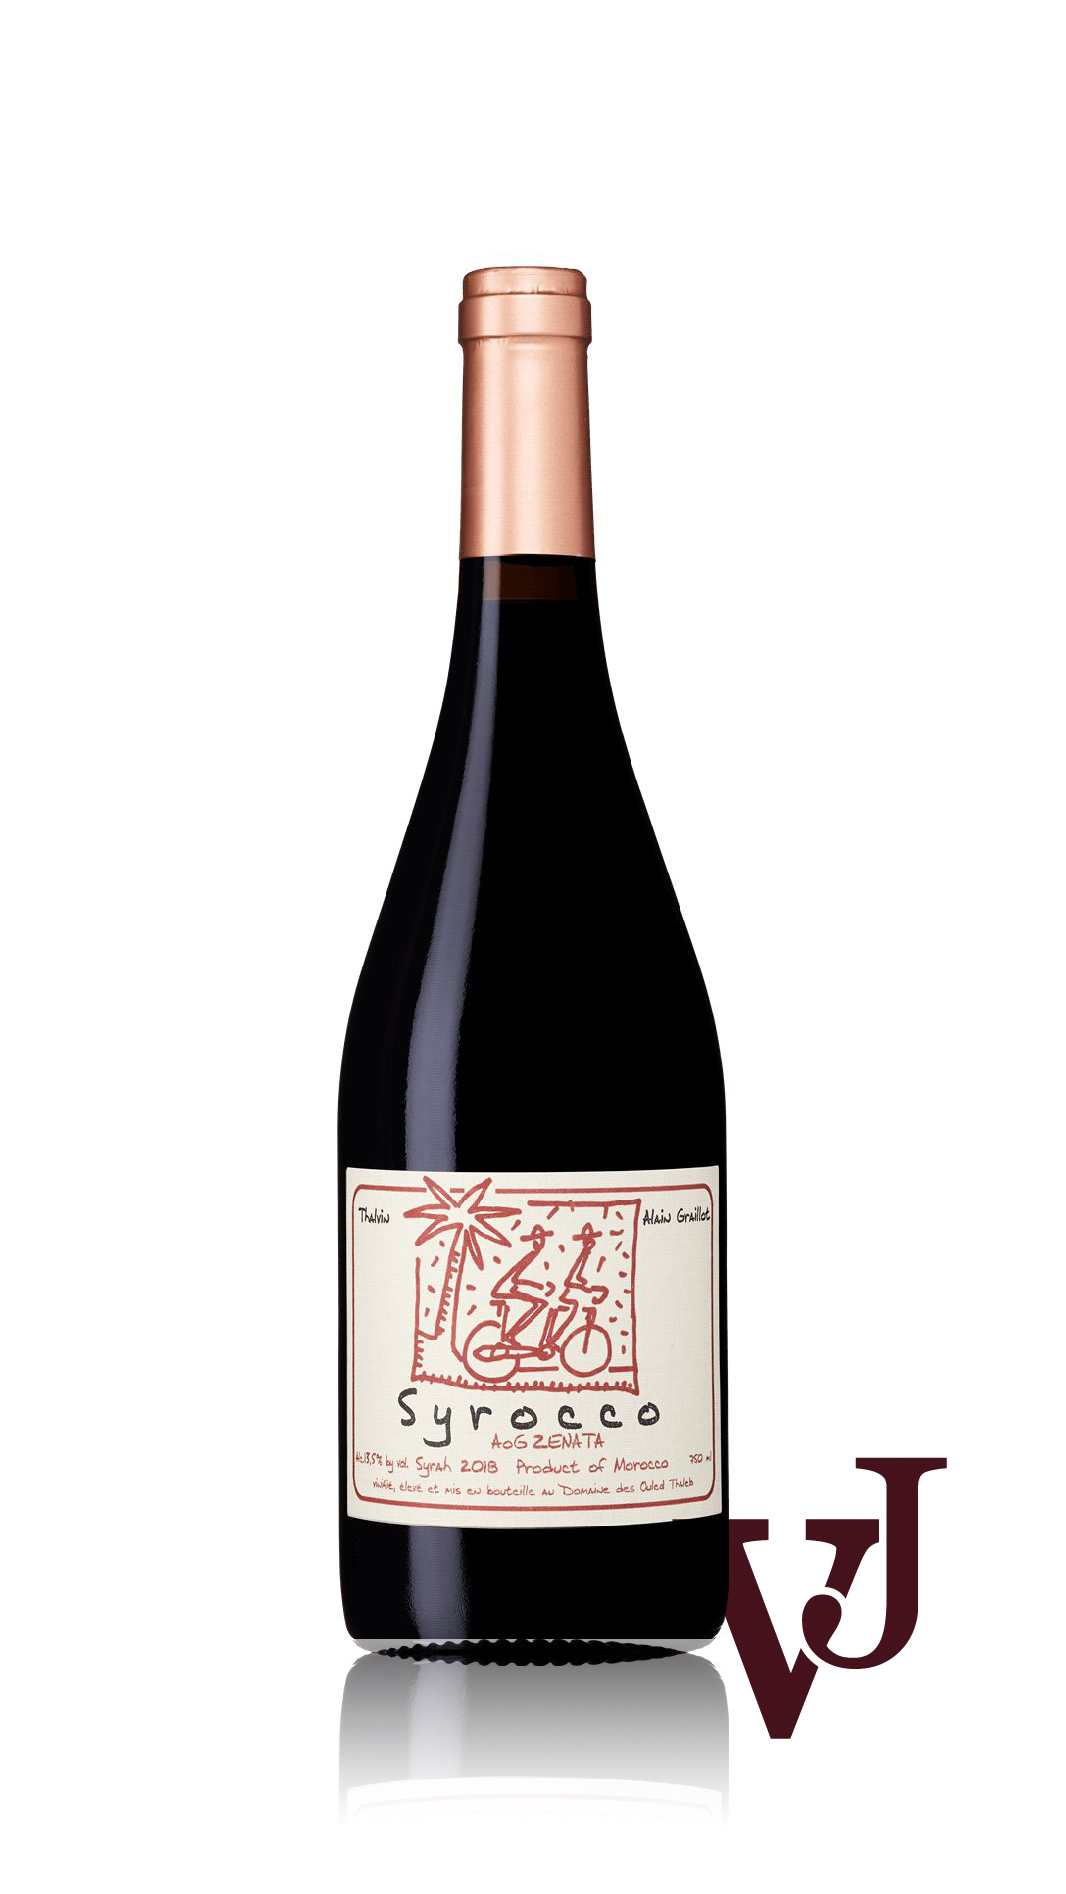 Rött Vin - Syrocco Syrah artikel nummer 7123101 från producenten Alain Graillot från området Marocko